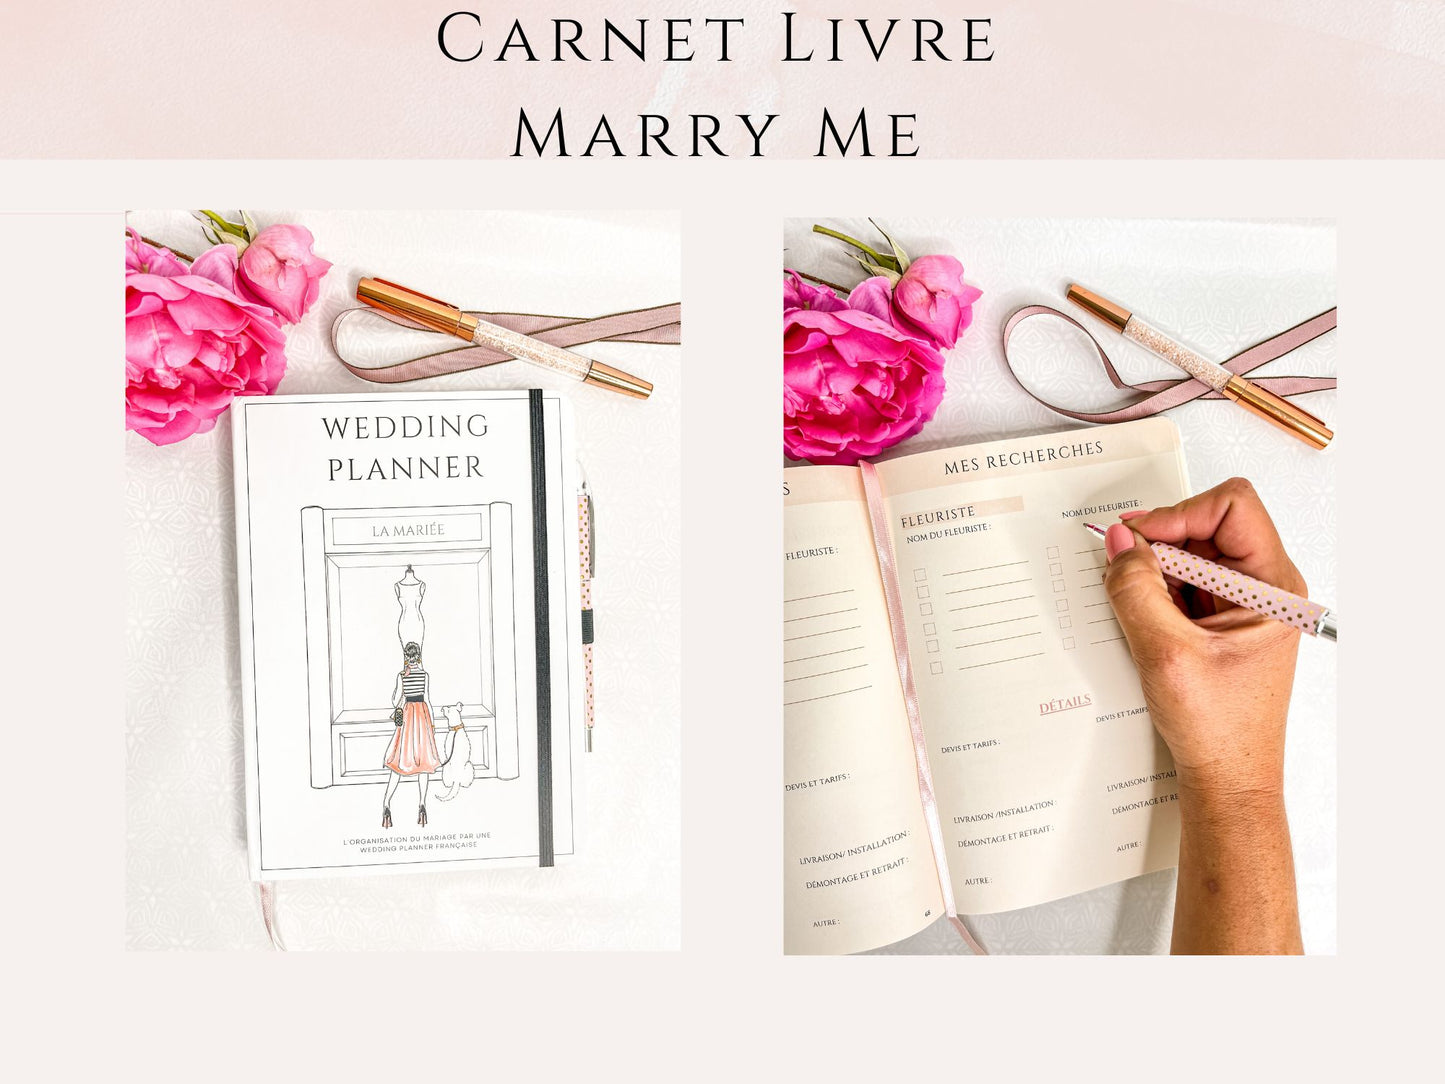 Carnet livre Marry Me - Organisateur de mariage – Mary McNess